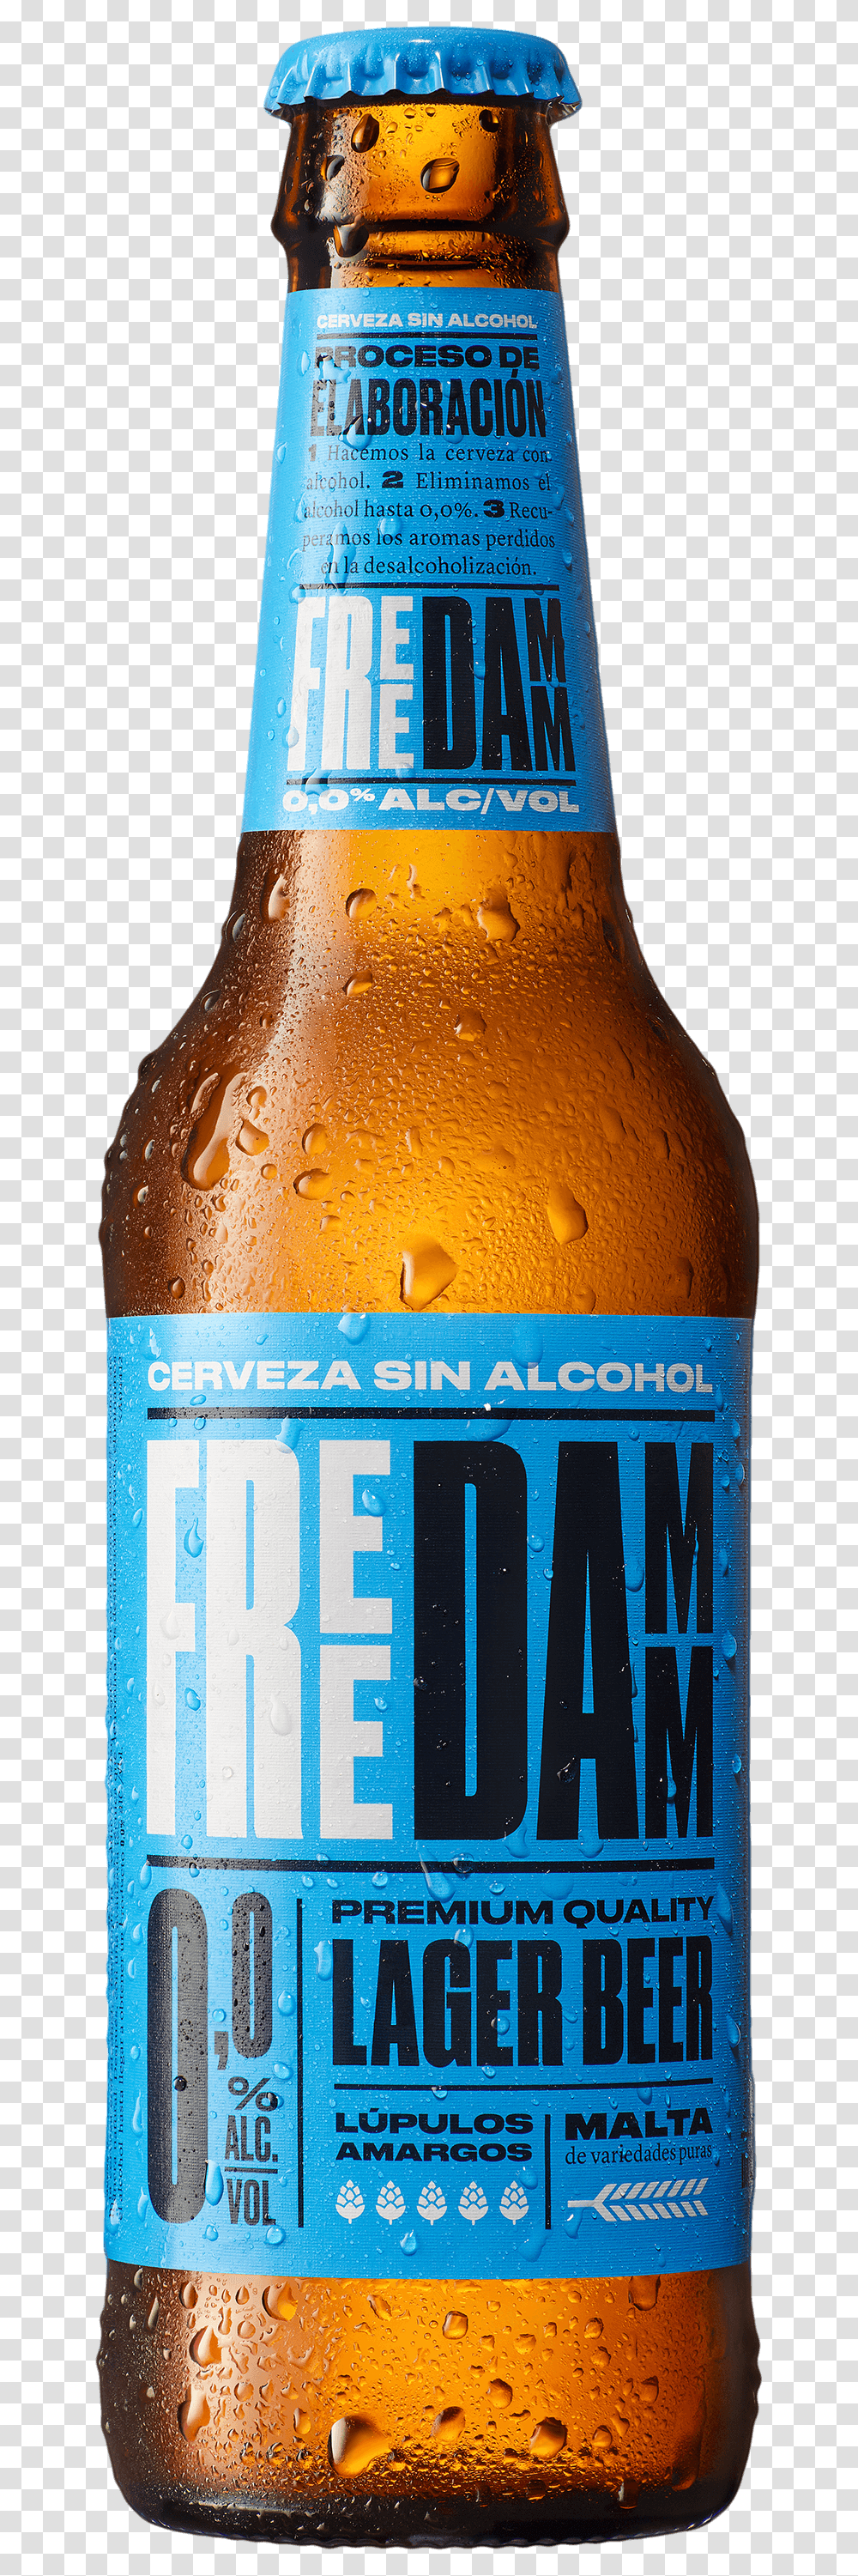 Free Damm Estrella Damm Non Alcoholic Beer, Beverage, Drink, Bottle, Beer Bottle Transparent Png